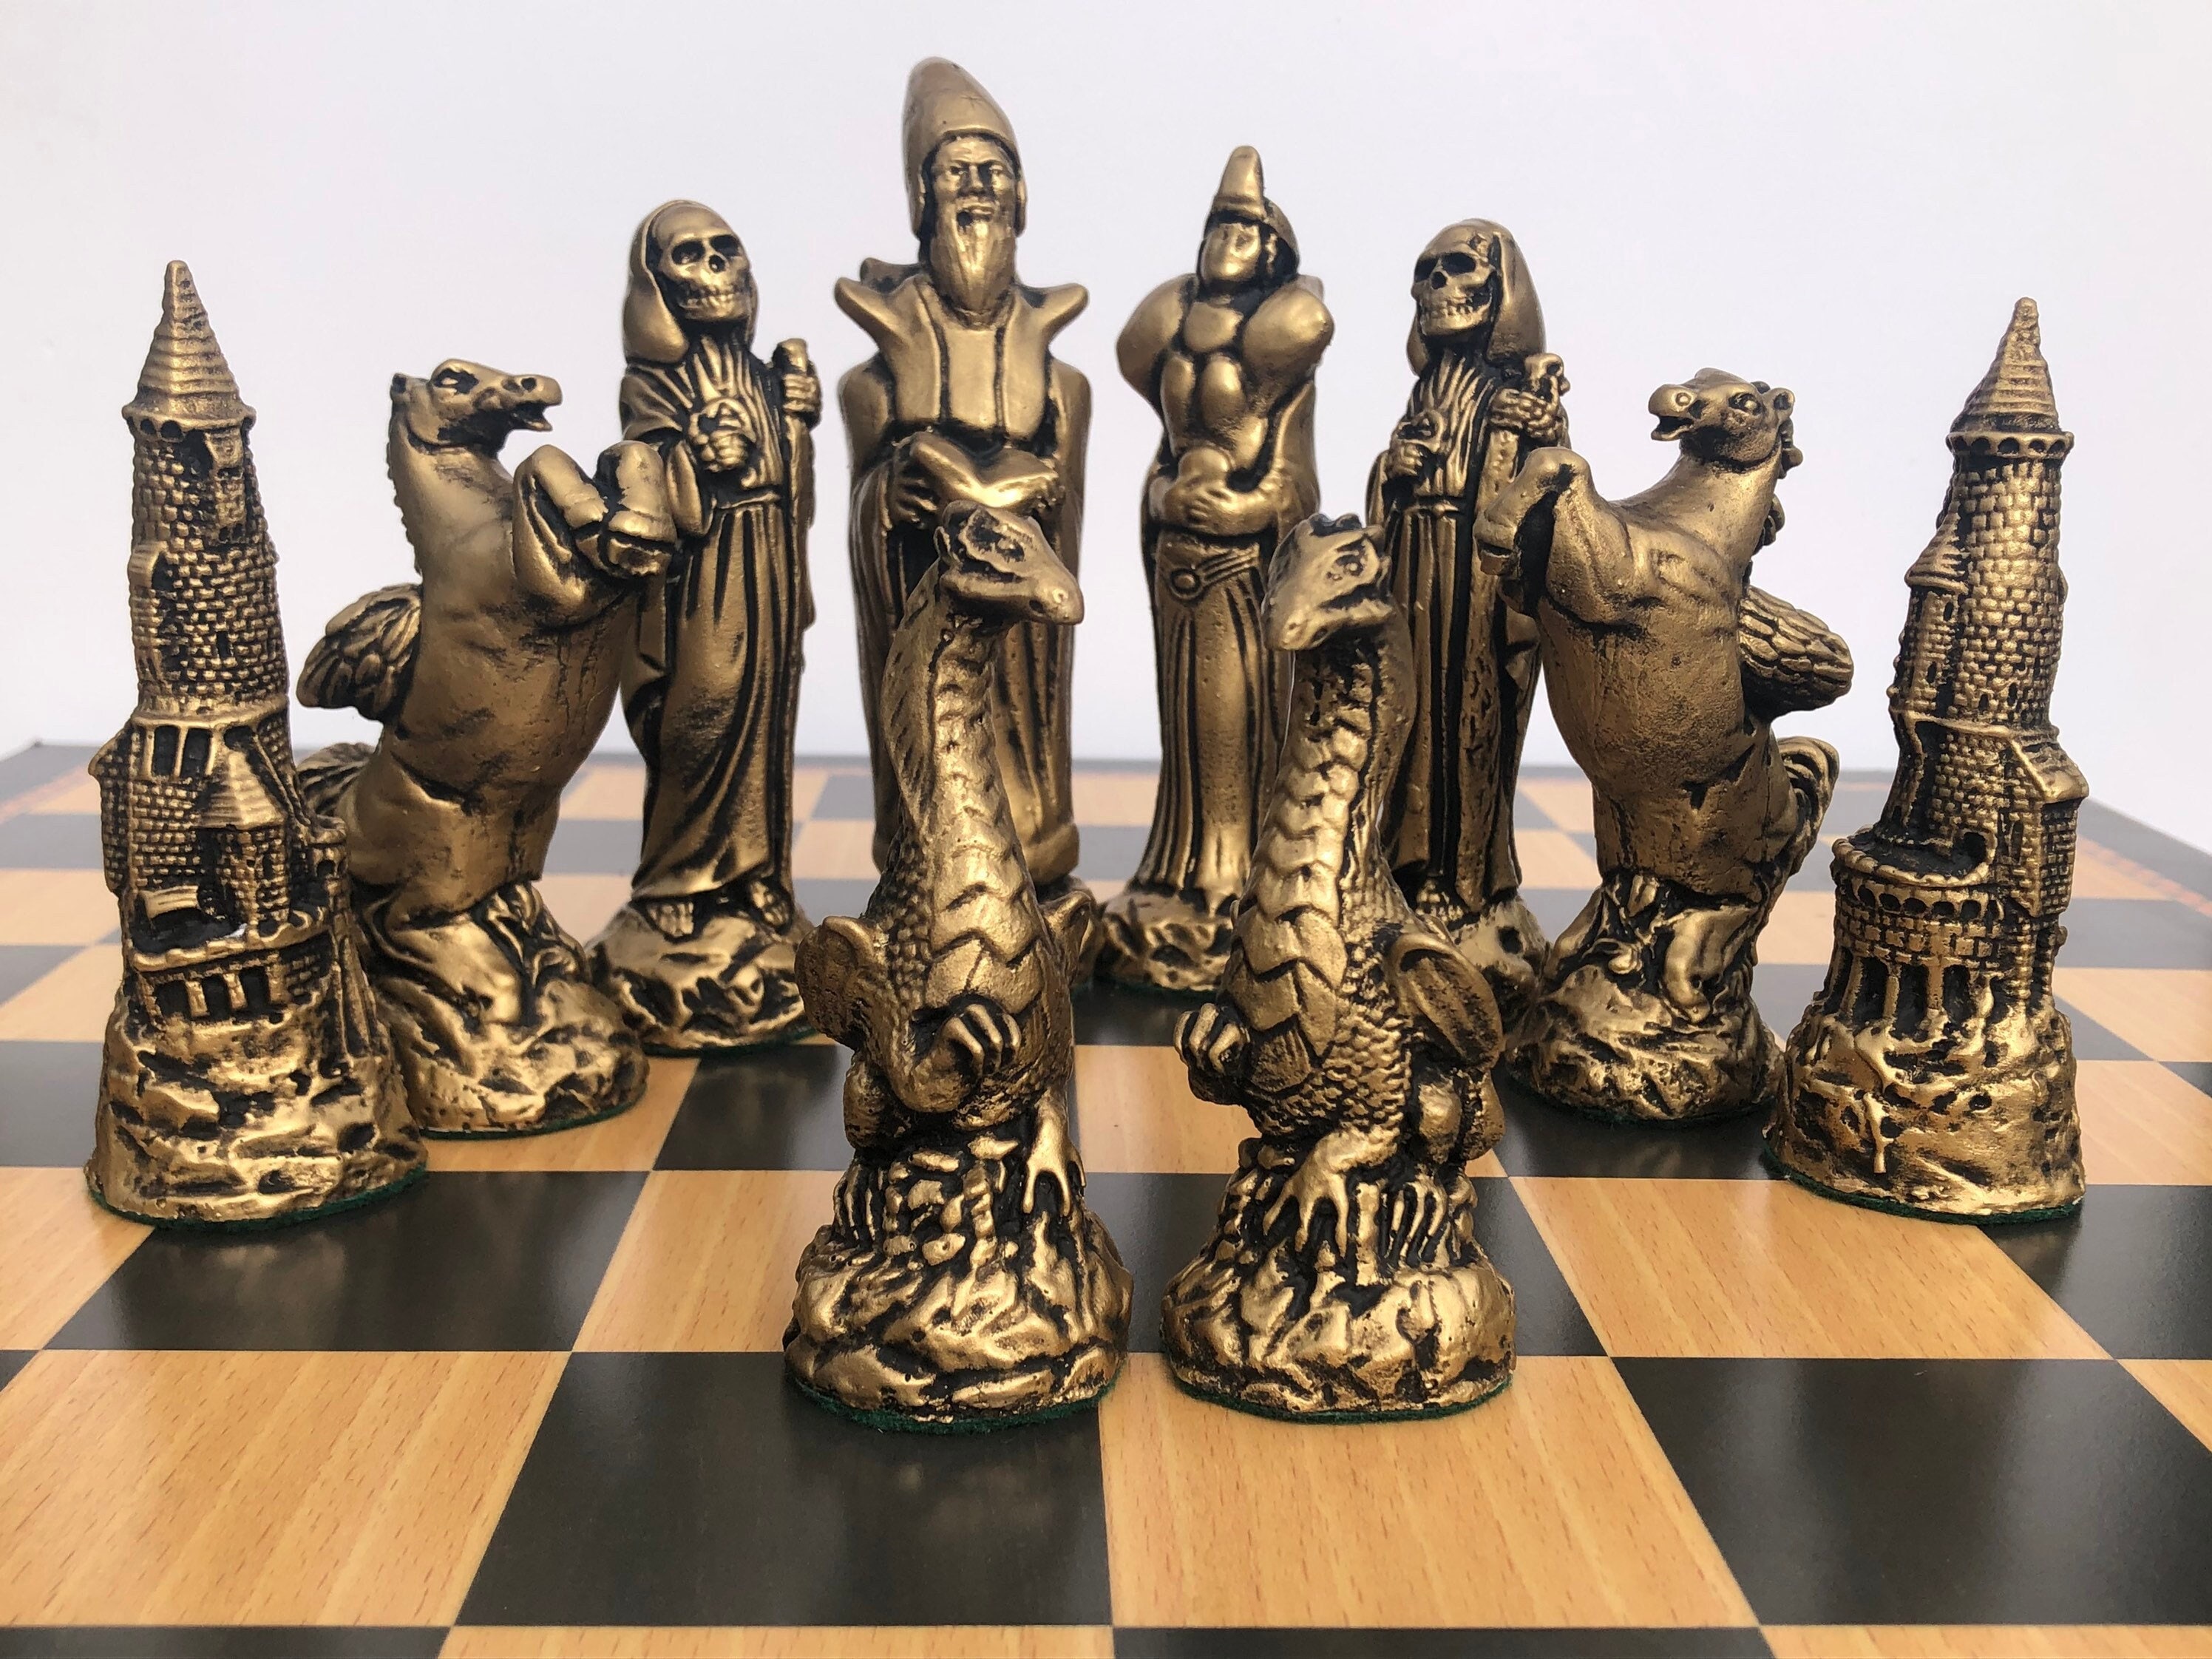 Peças de xadrez monumentais do Wizard Chess UHD · Creative Fabrica